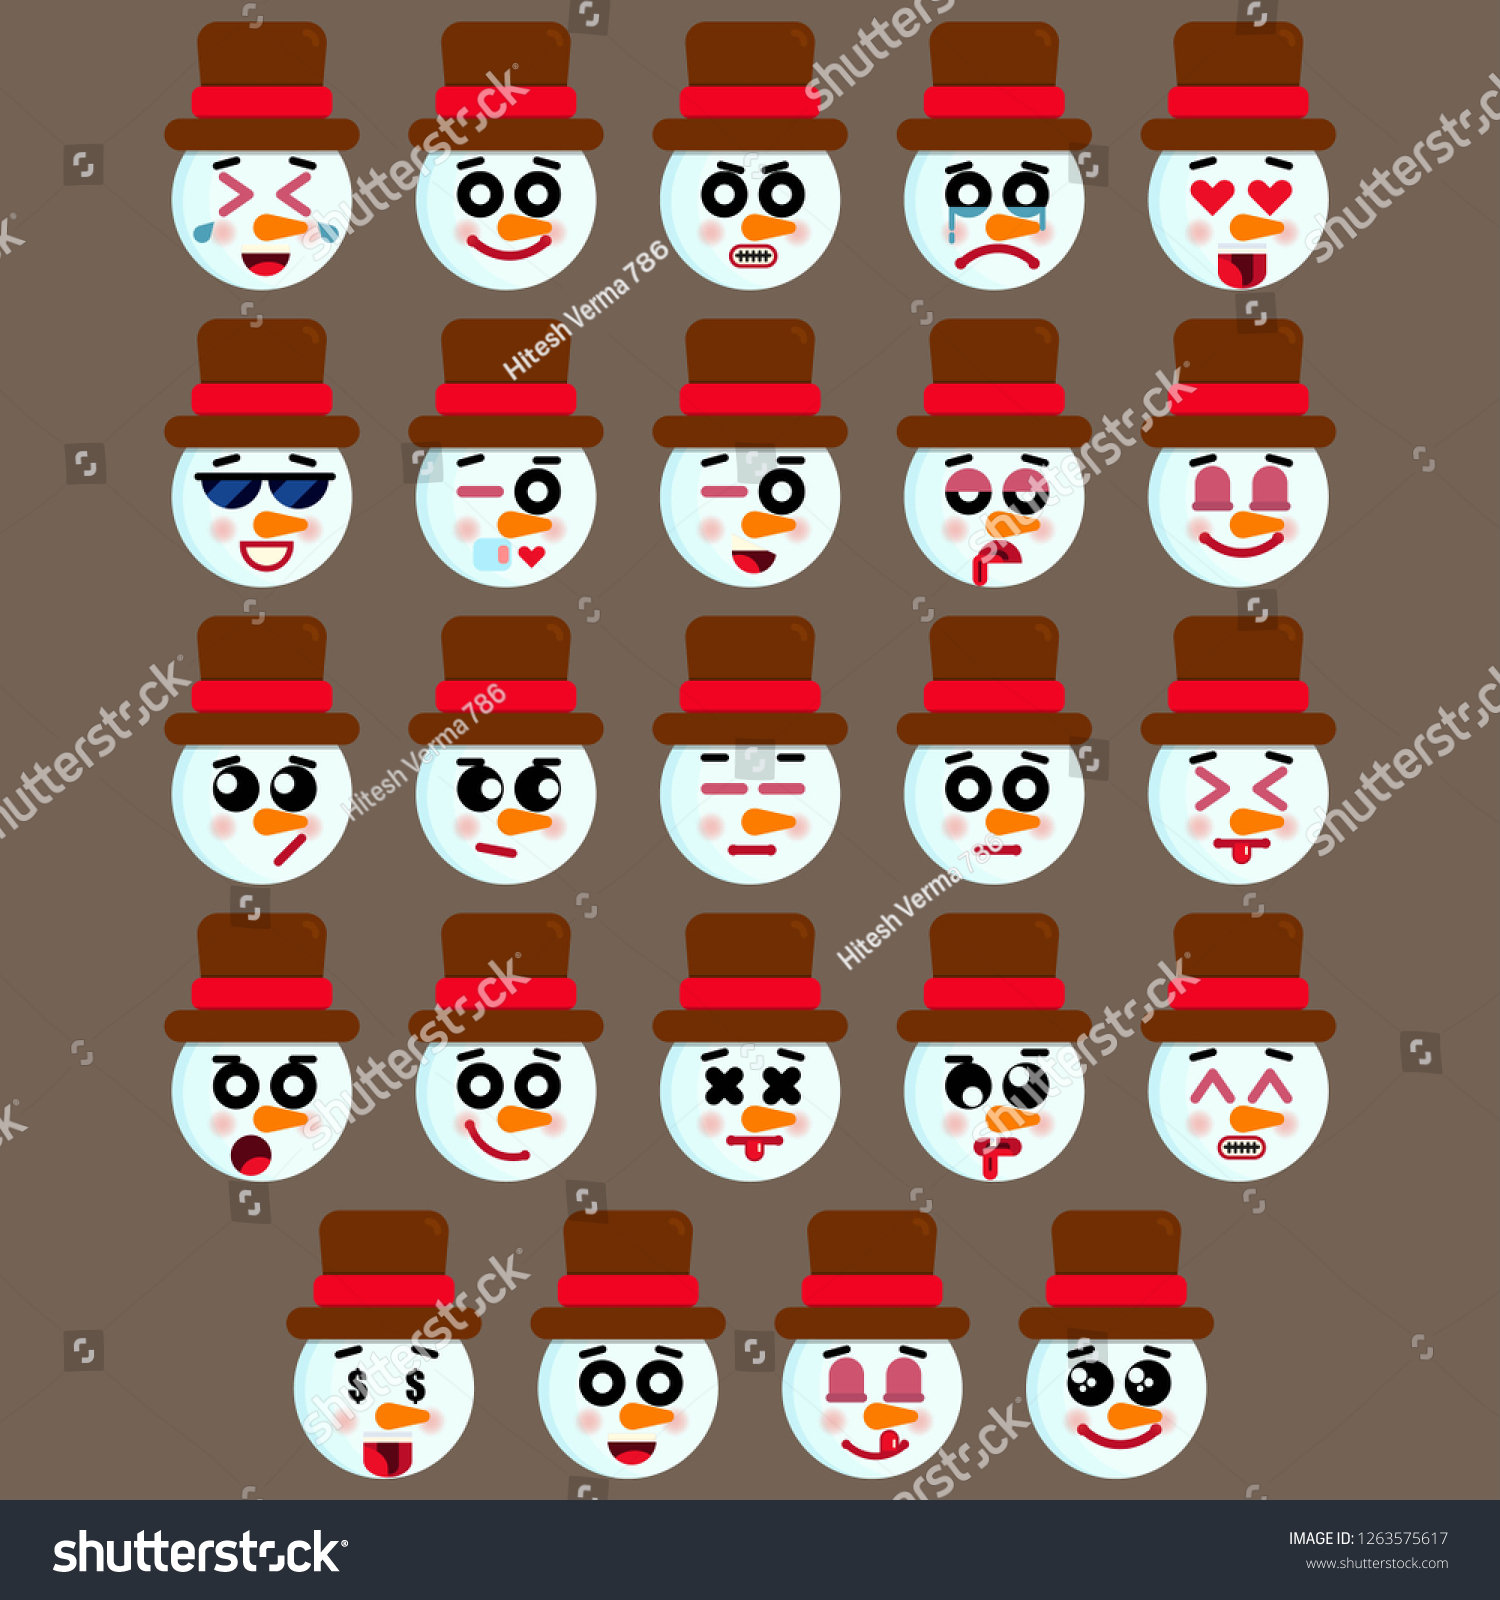 かわいい雪だるまの絵文字のセット さまざまな表情のアイコン スノーマンの顔にさまざまな表情を持つ絵文字 ベクターイラスト クリスマス絵文字コレクション のベクター画像素材 ロイヤリティフリー